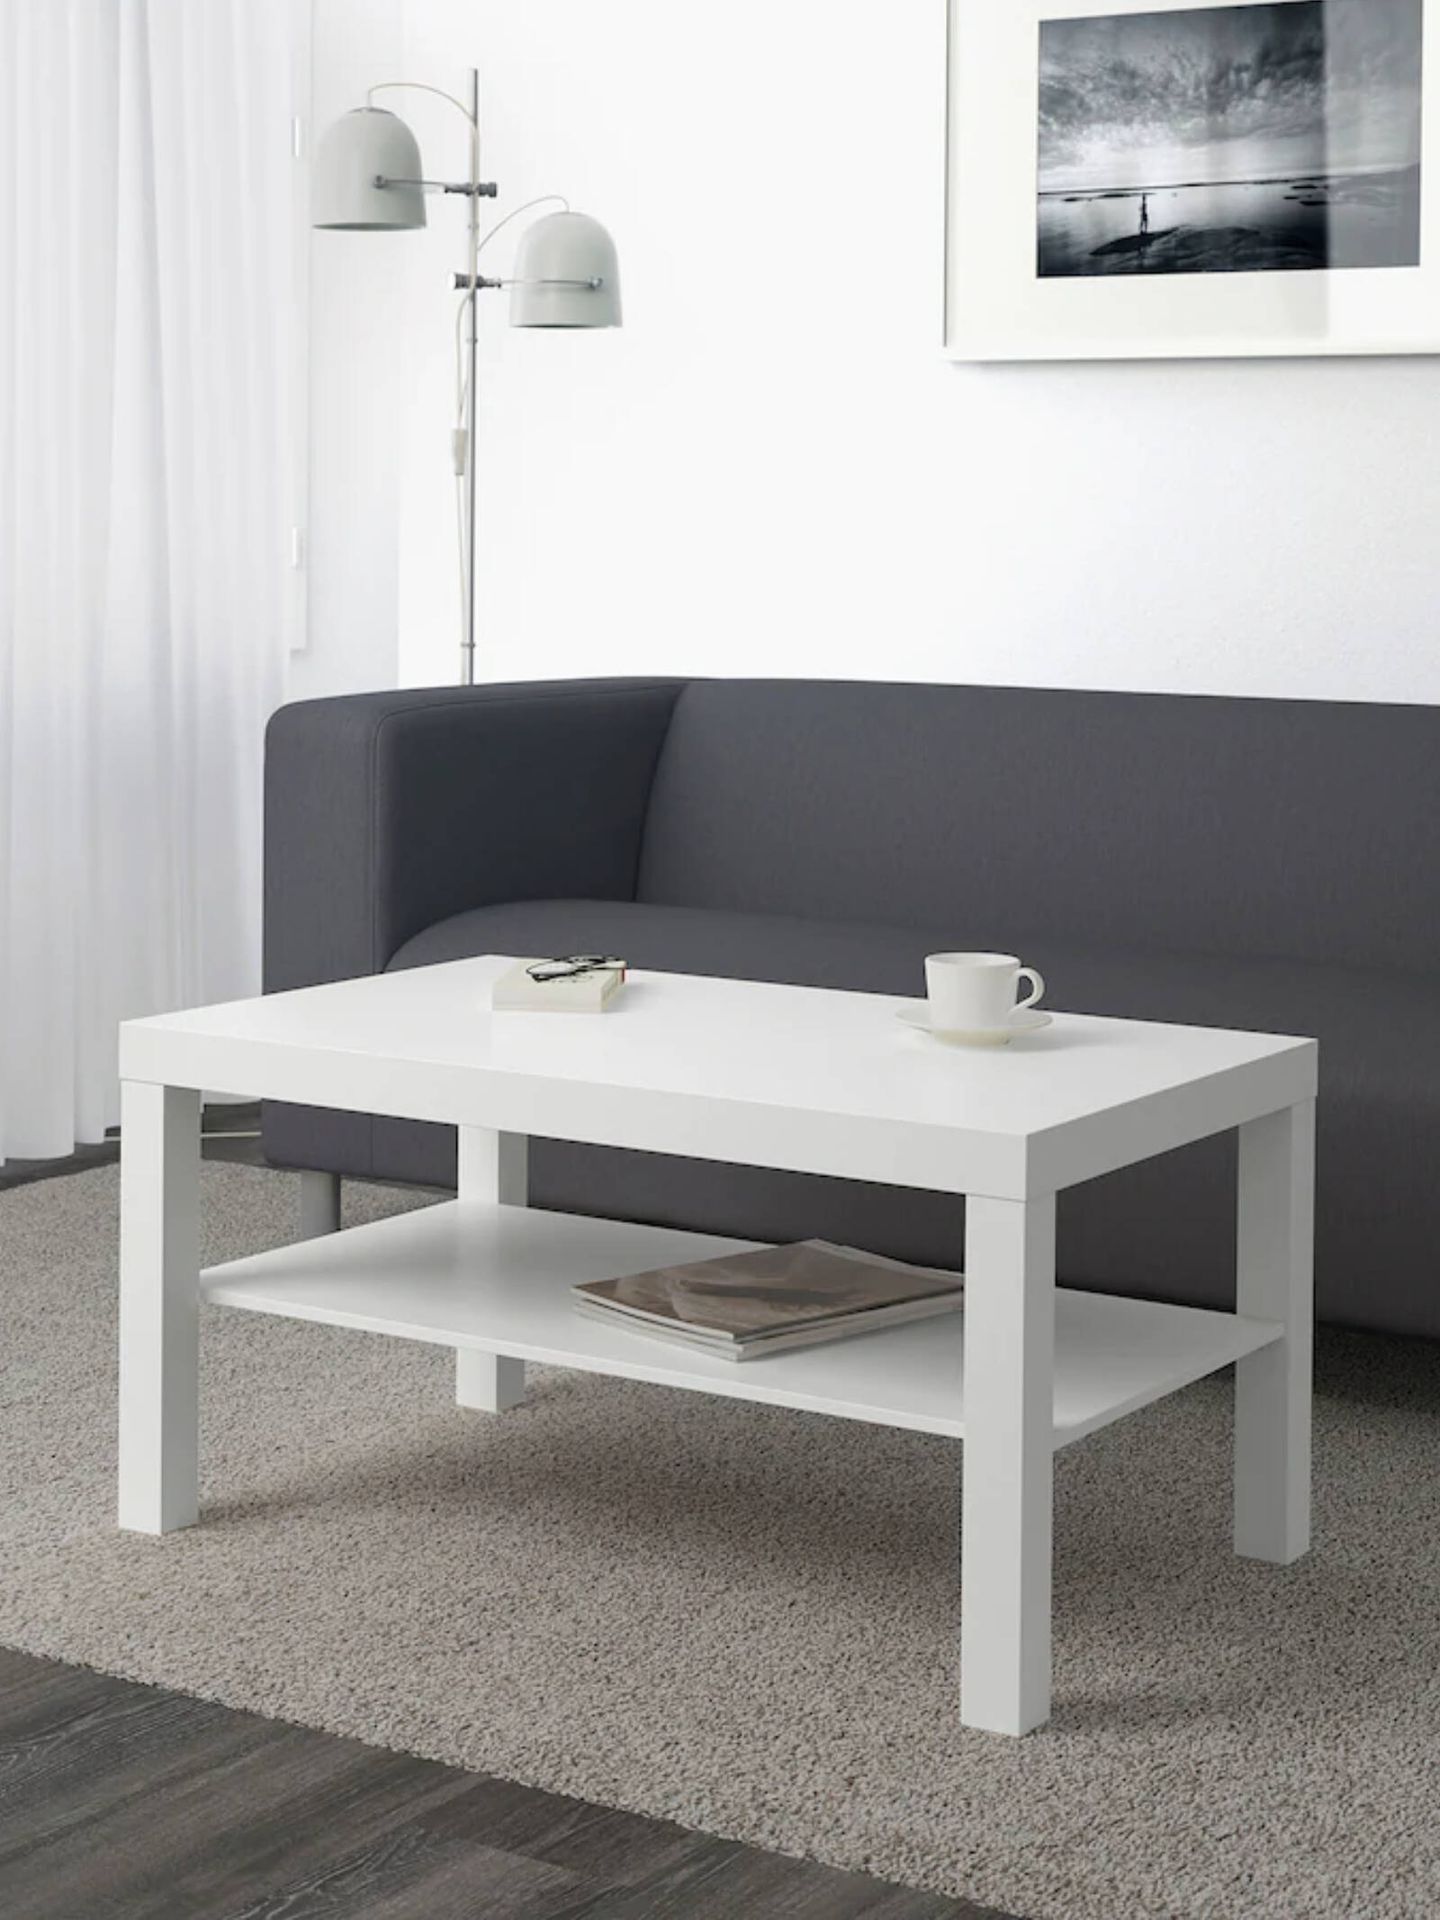 Soluciones de decoración para un salón pequeño y coqueto. (Cortesía/Ikea)